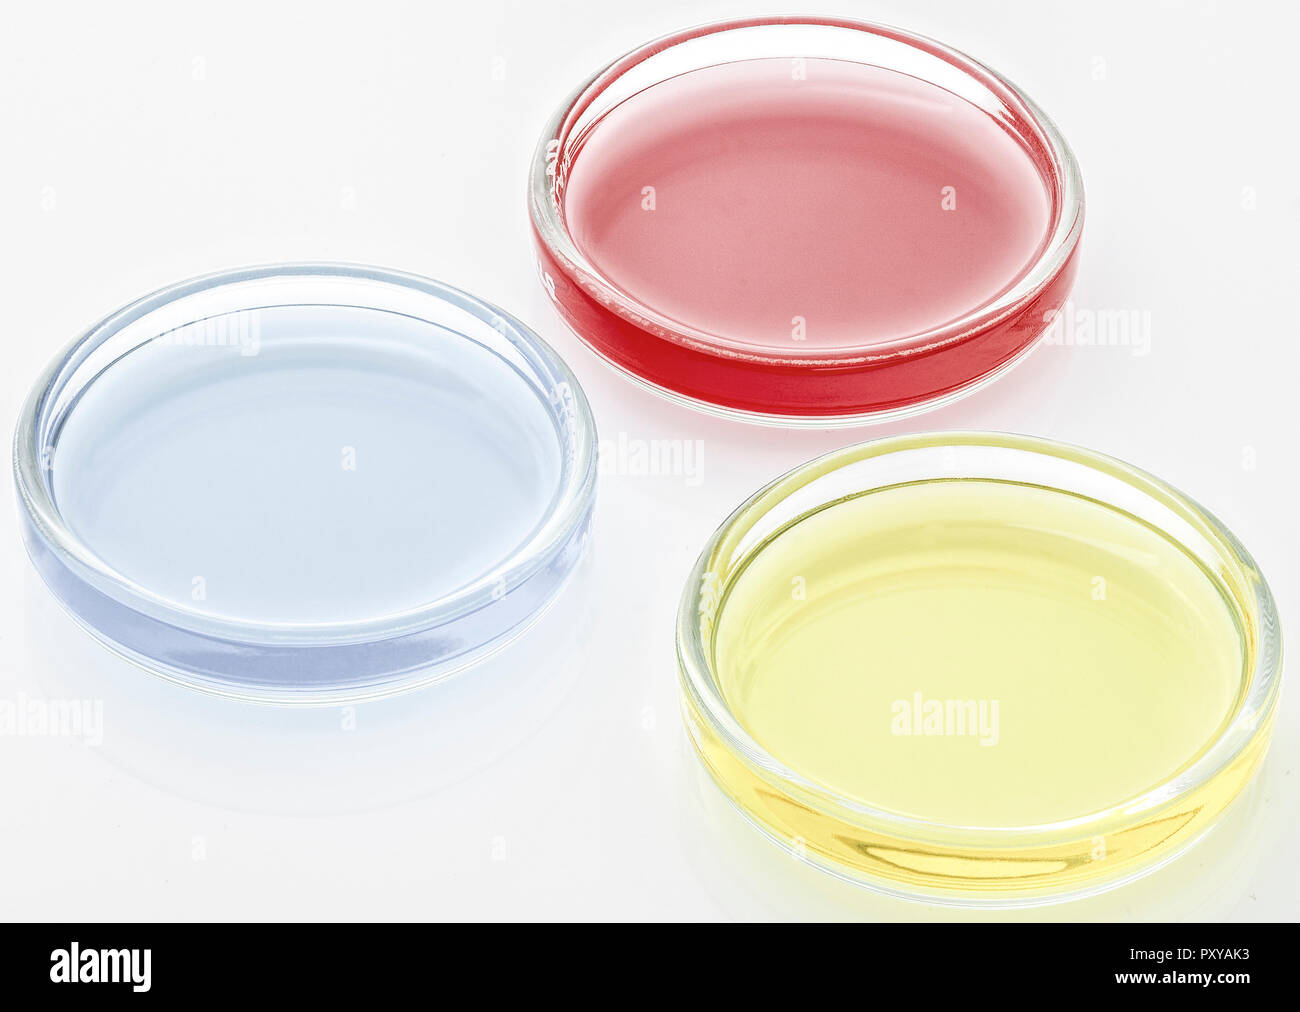 Drei Petrischalen mit farbigen Fluessigkeiten Stock Photo